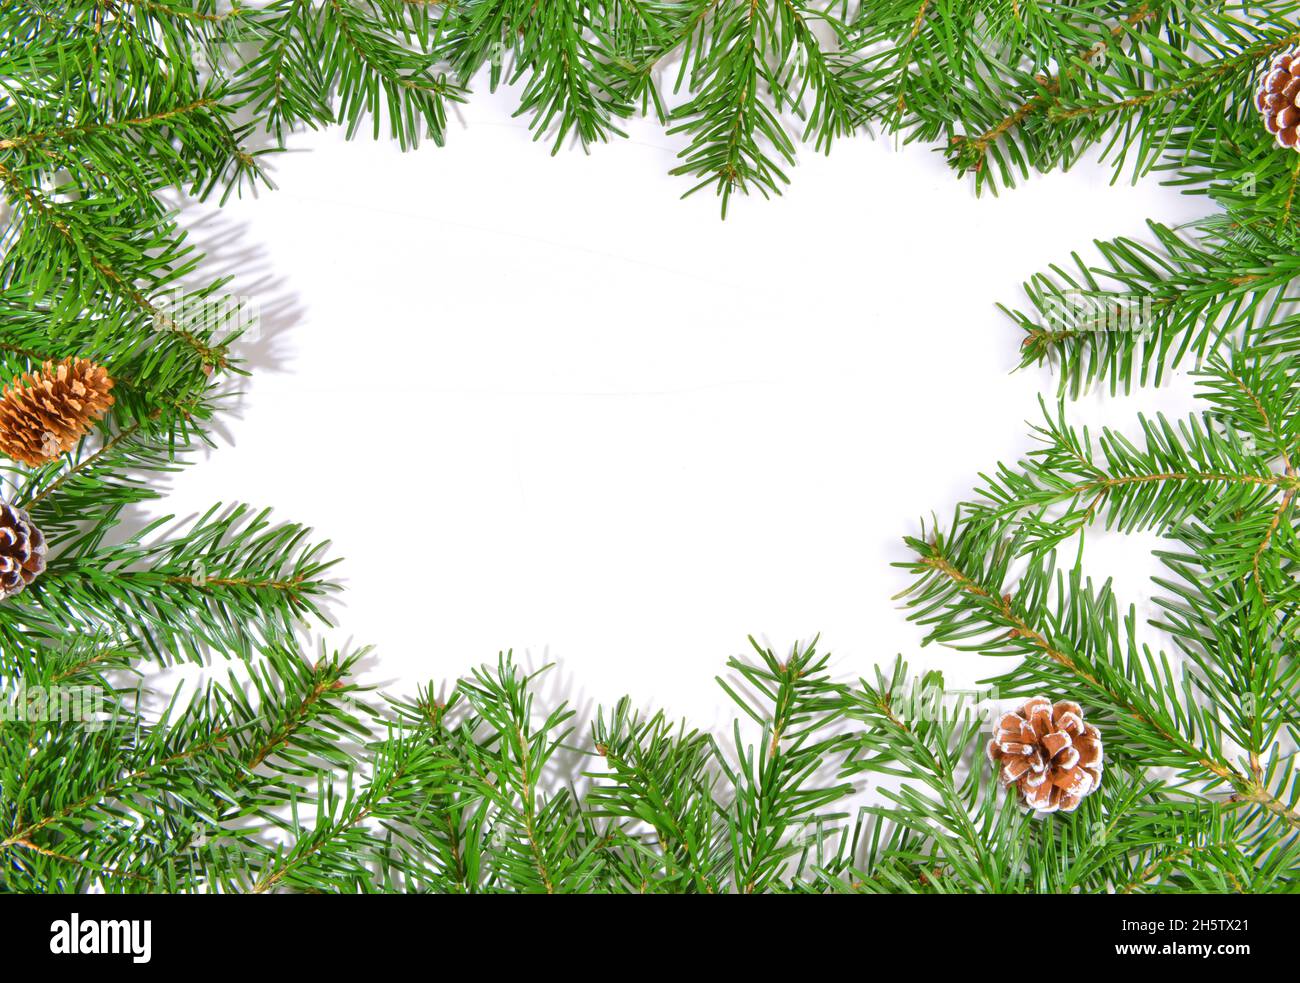 Livre blanc sur les branches de sapin de Noël, avec des branches de sapin isolées sur fond blanc Banque D'Images